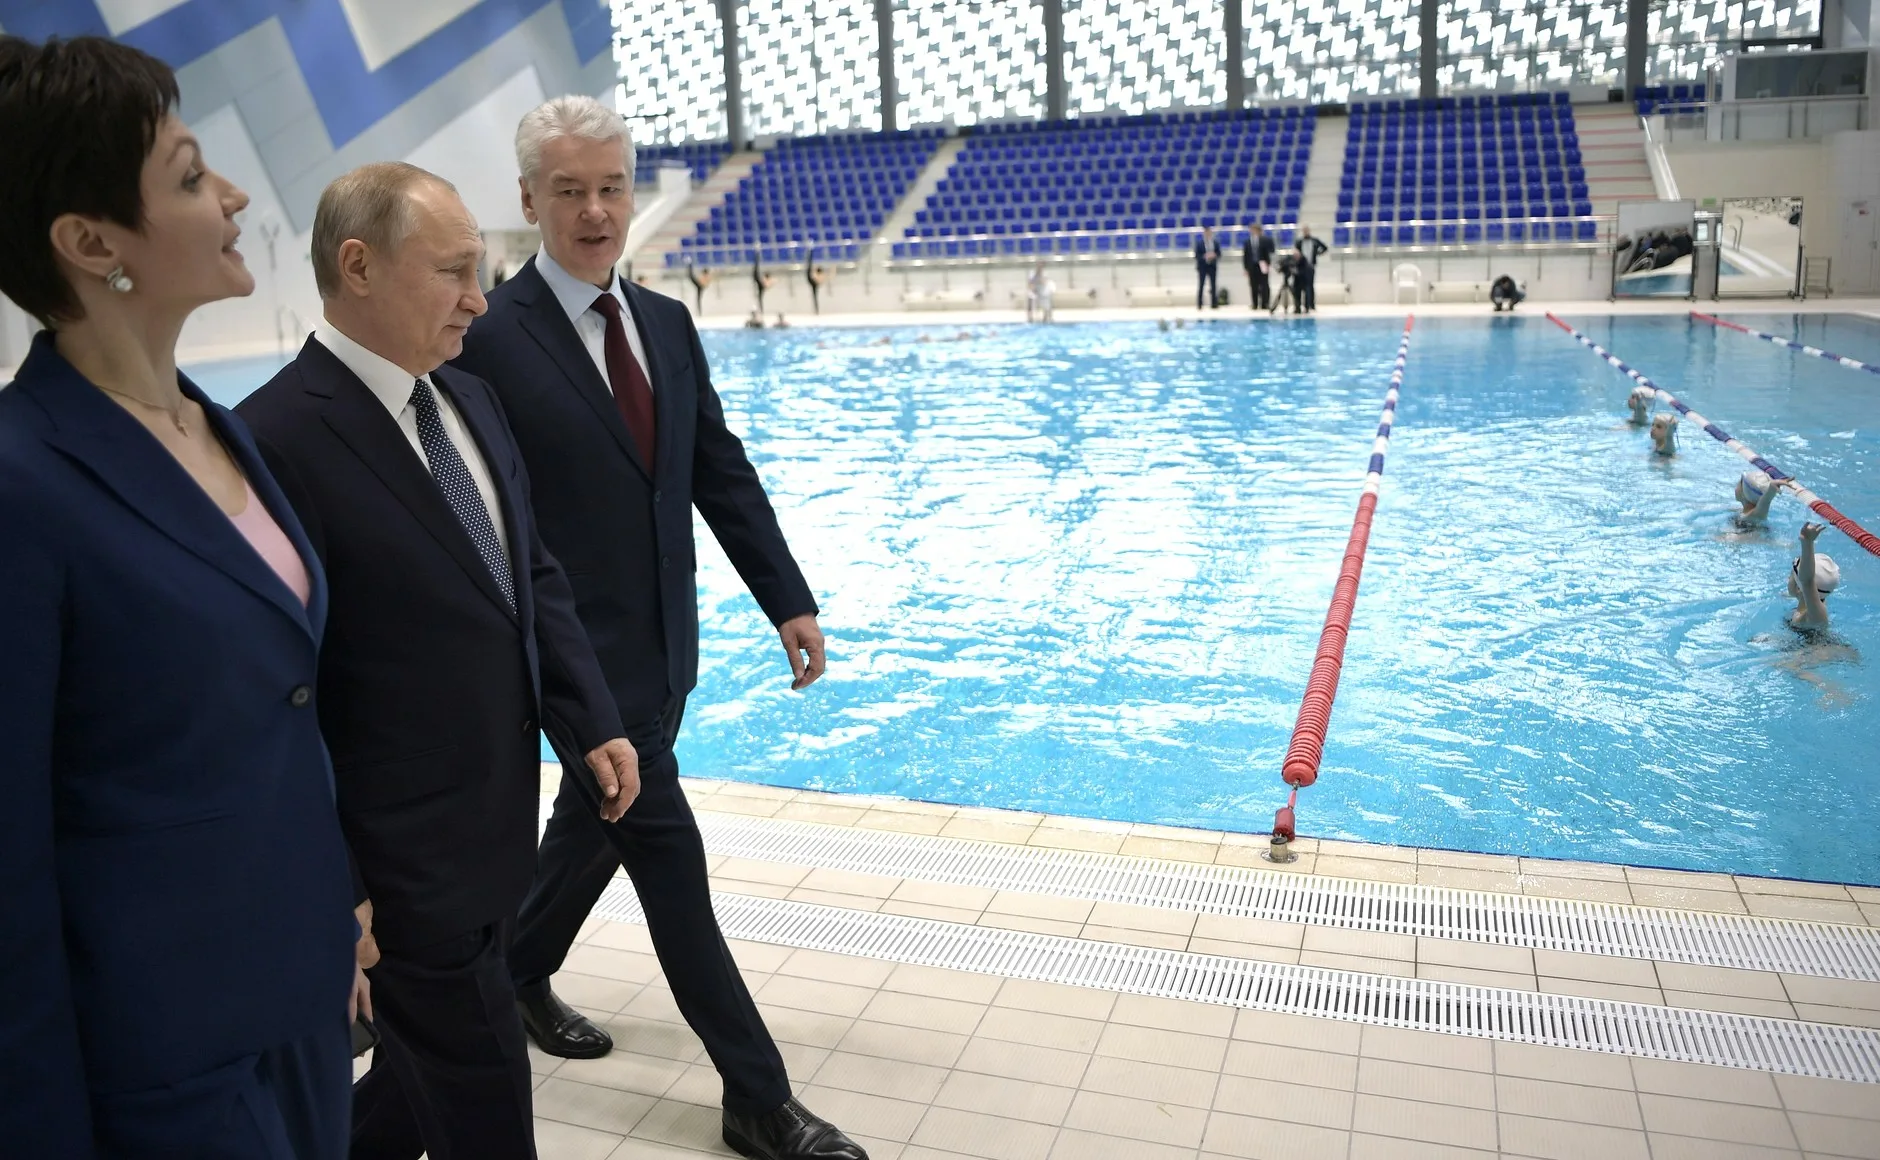 Давыдова перед отбытием уволилась из Олимпийского центра синхронного плавания, который основала в 2014 году